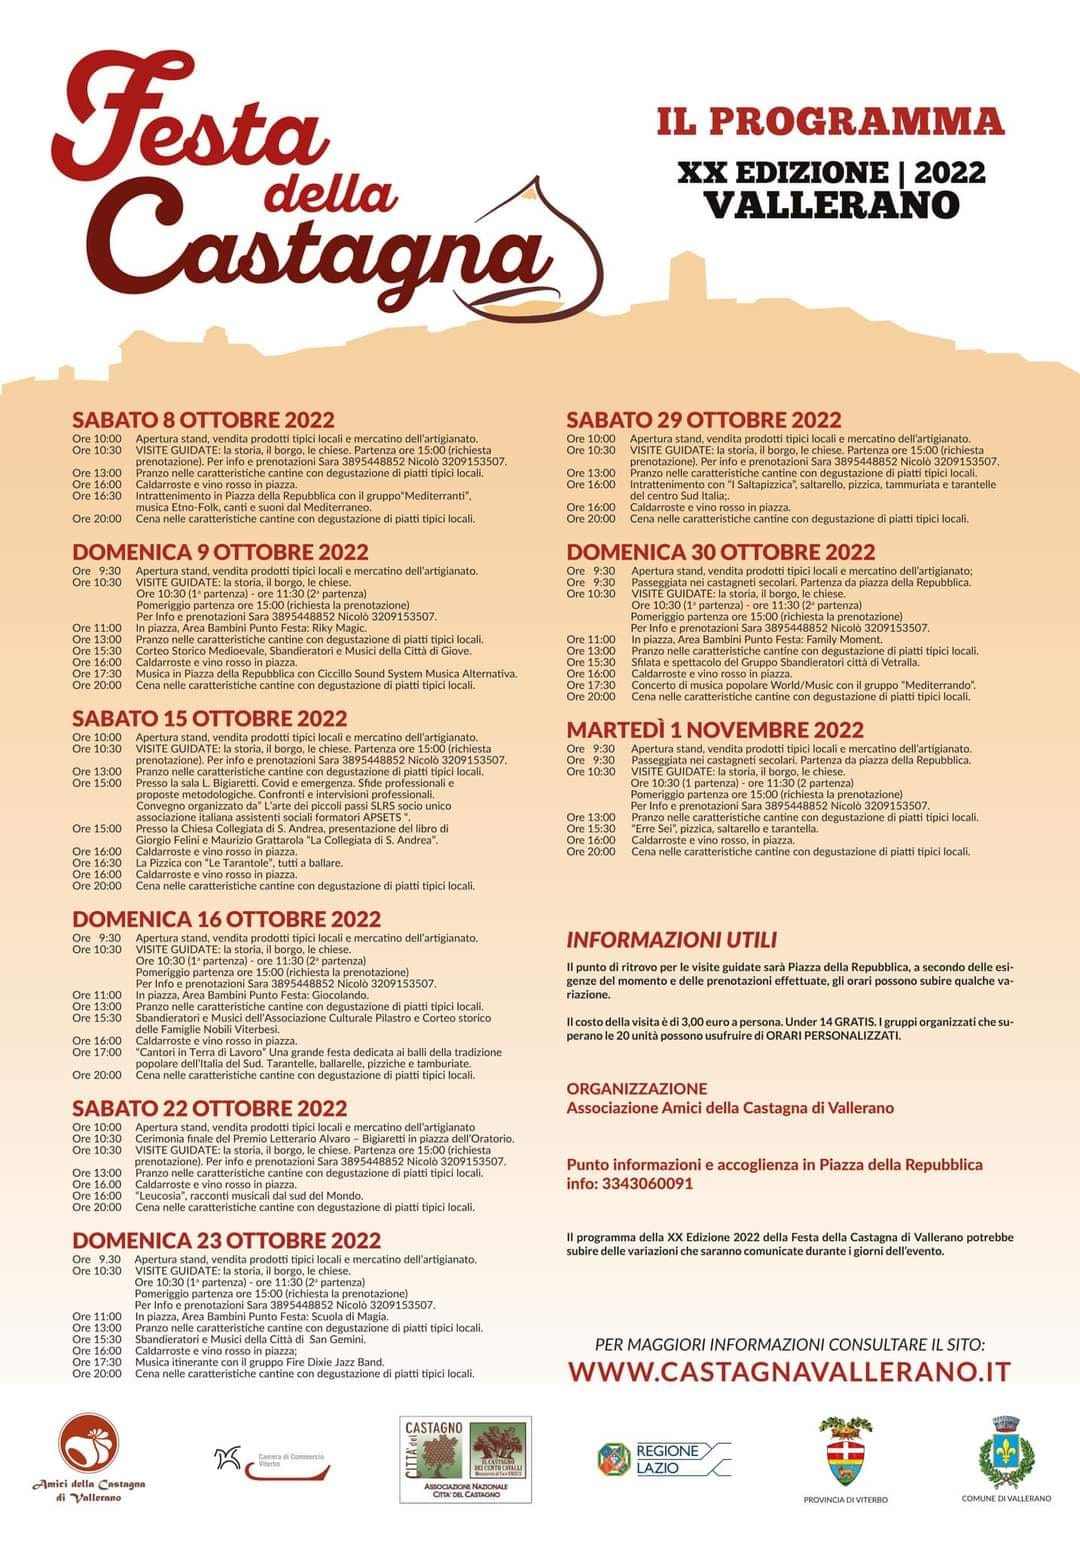 Vallerano (VT)
"20^ Festa della Castagna" 
tutti i Weekend
dall'8 Ottobre al 1° Novembre 
